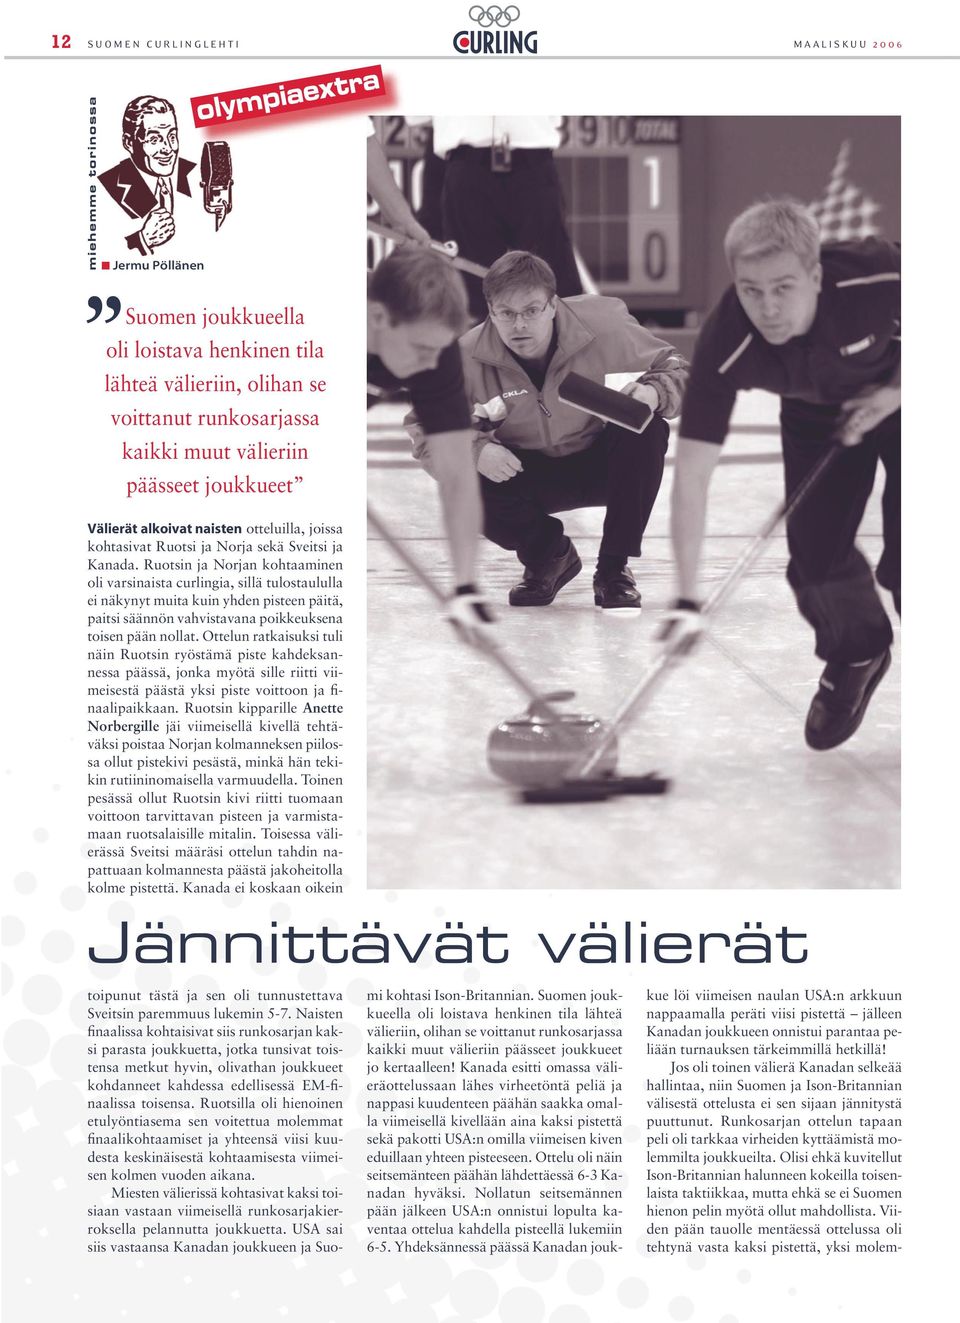 Ruotsin ja Norjan kohtaaminen oli varsinaista curlingia, sillä tulostaululla ei näkynyt muita kuin yhden pisteen päitä, paitsi säännön vahvistavana poikkeuksena toisen pään nollat.